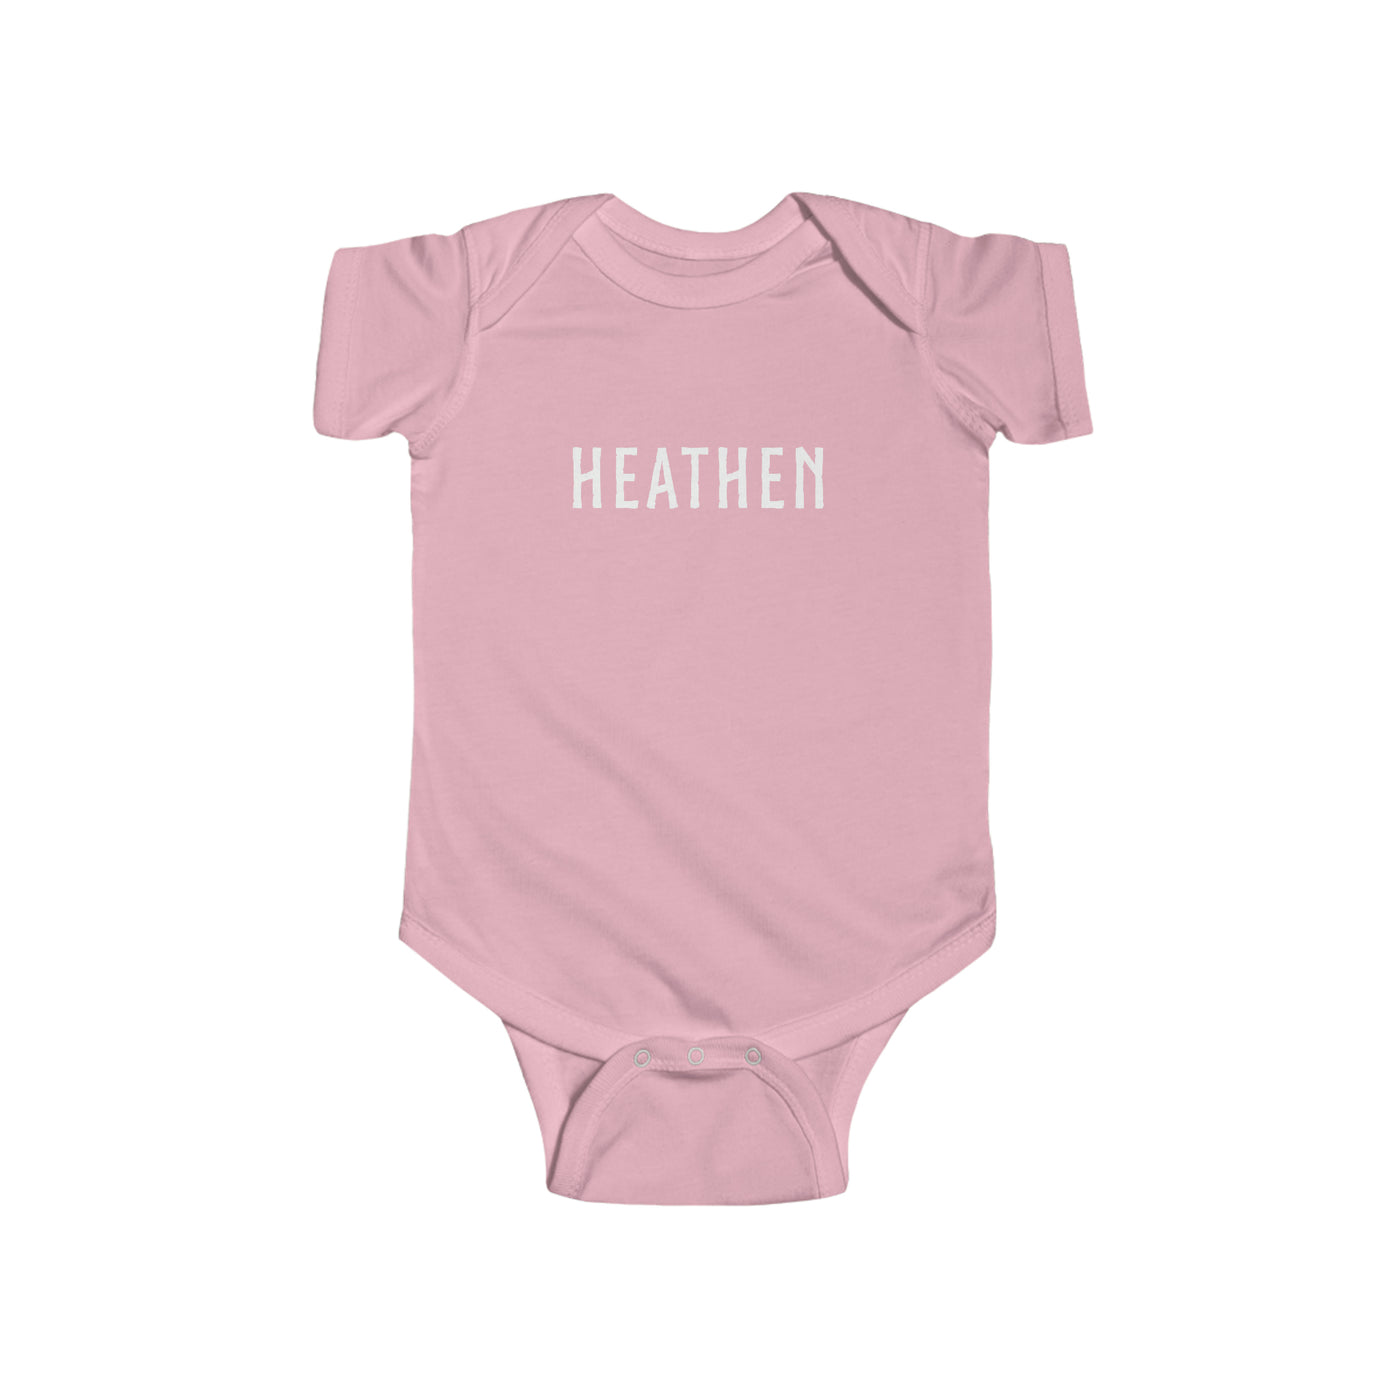 Heathen Baby Bodysuit